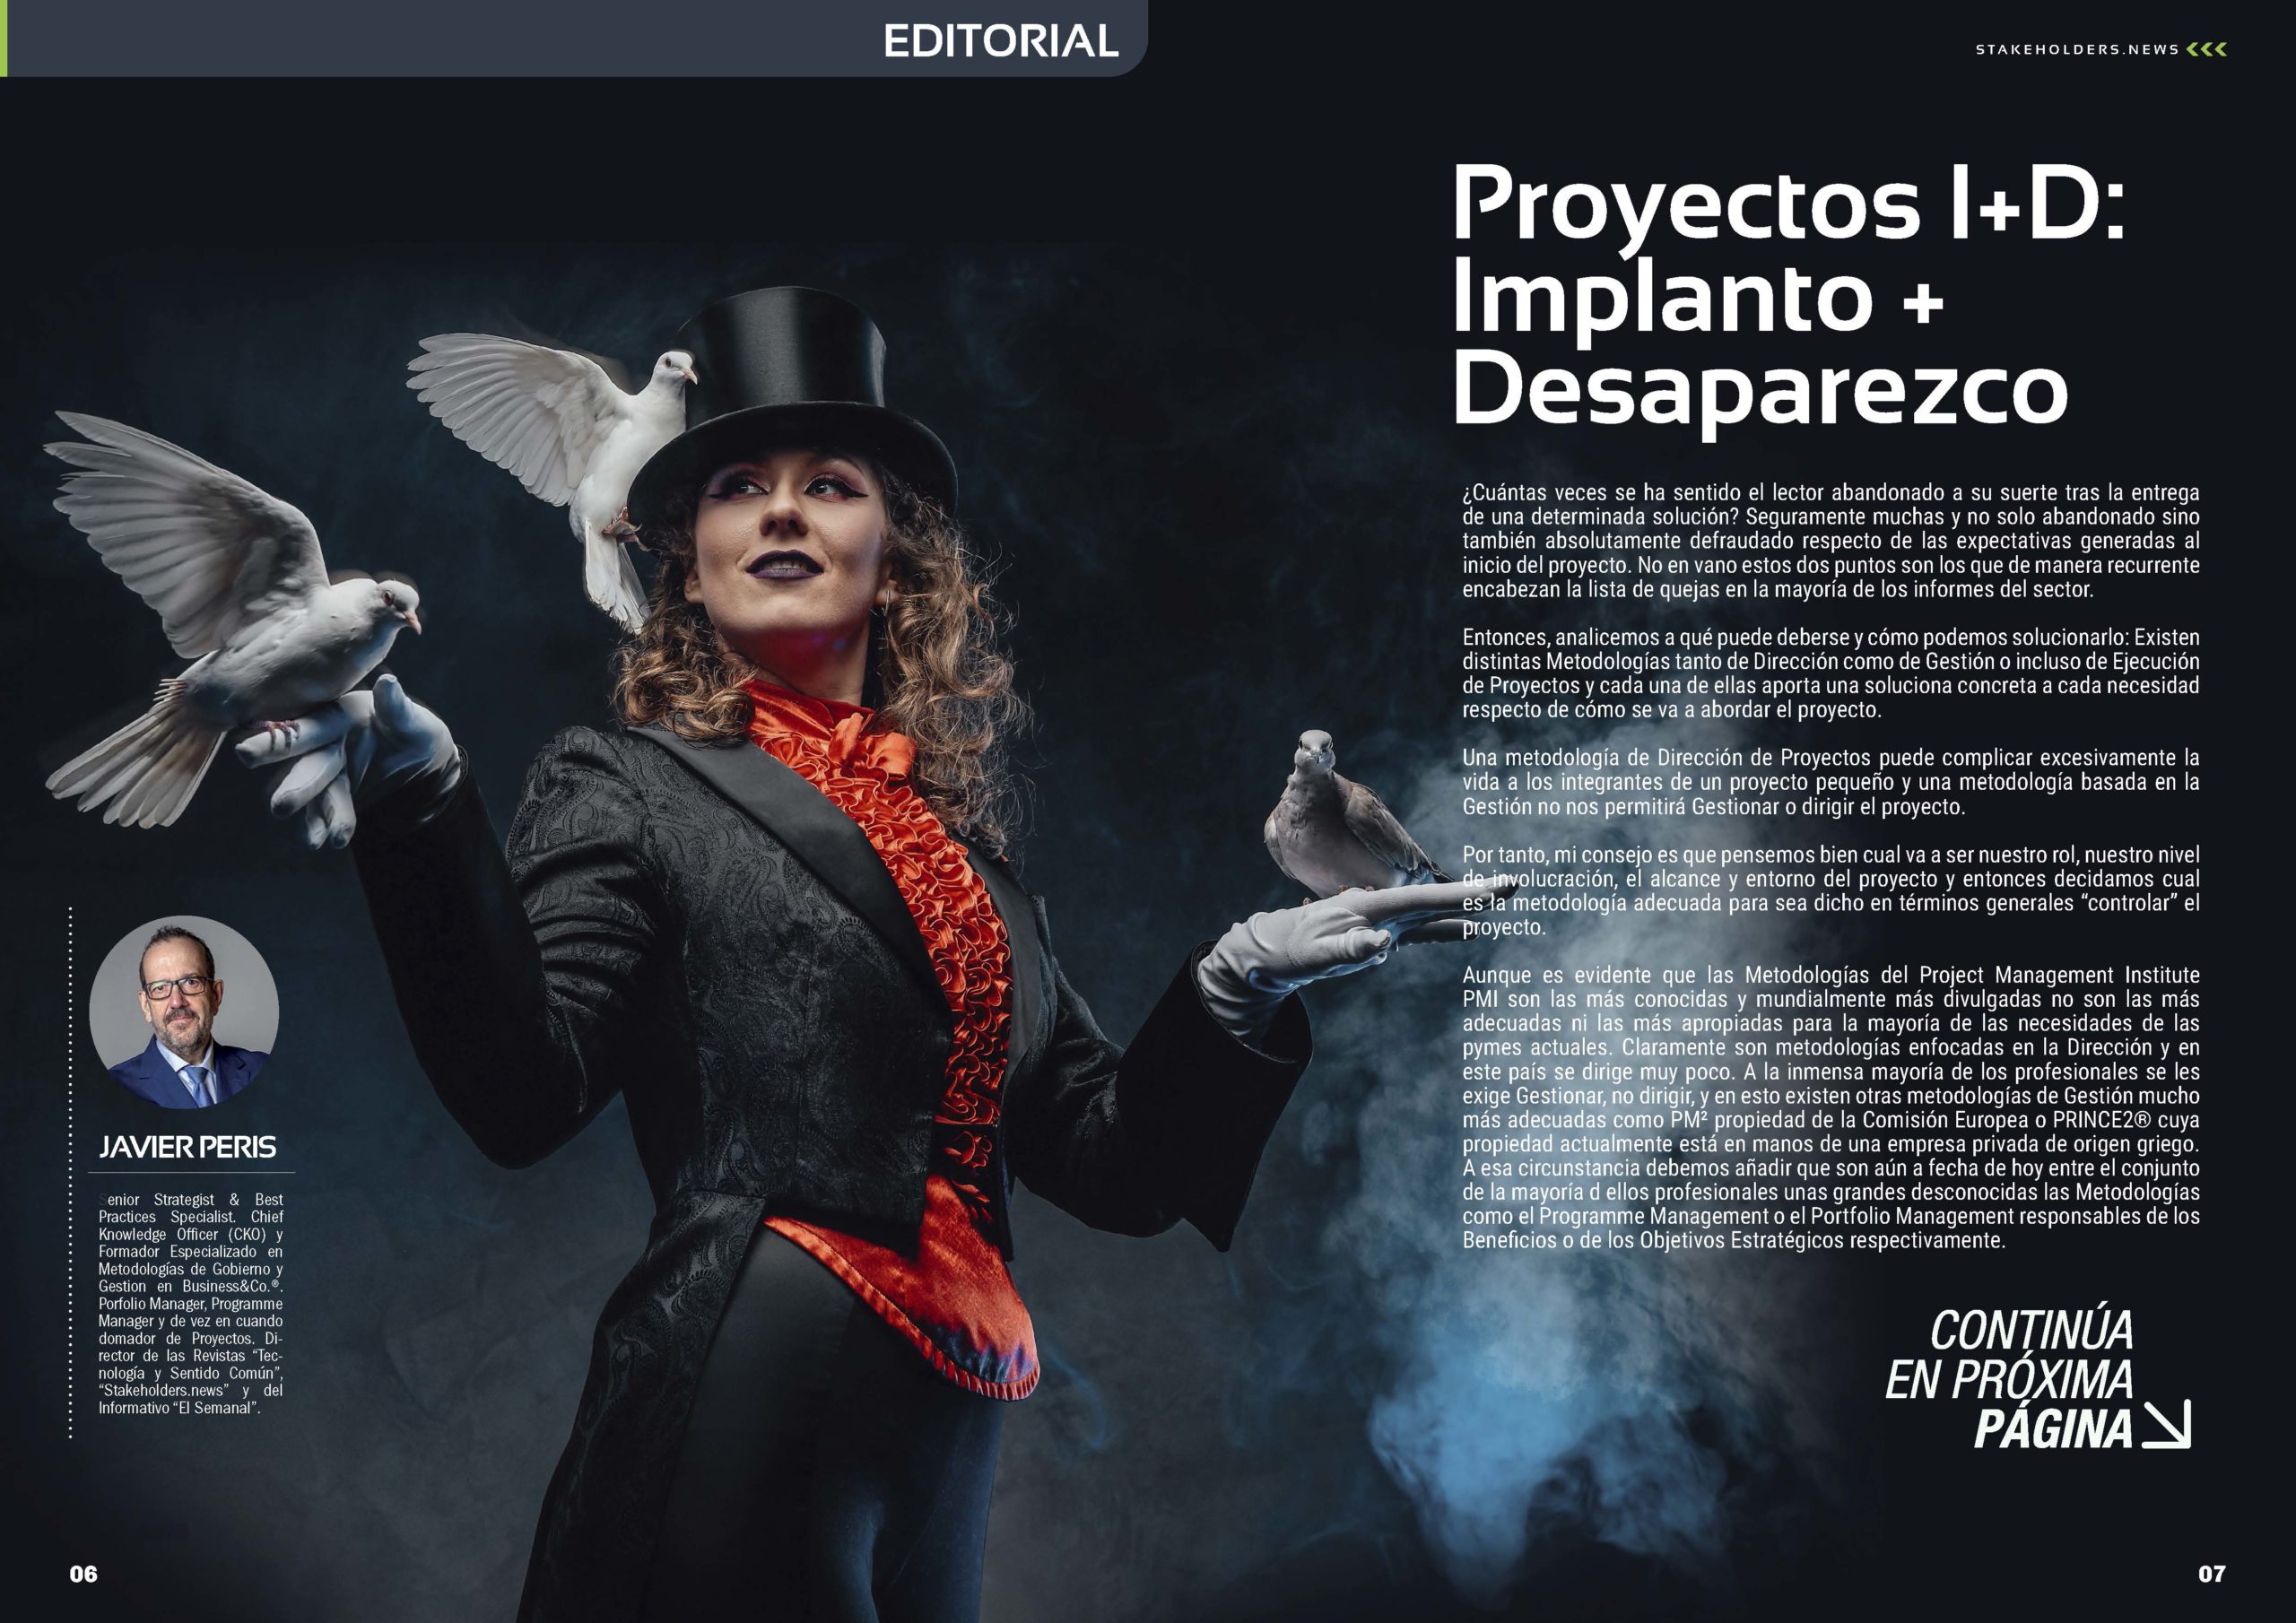 Editorial "Proyectos I+D: Implanto + Desaparezco" de Javier Peris en la Revista Stakeholders.news